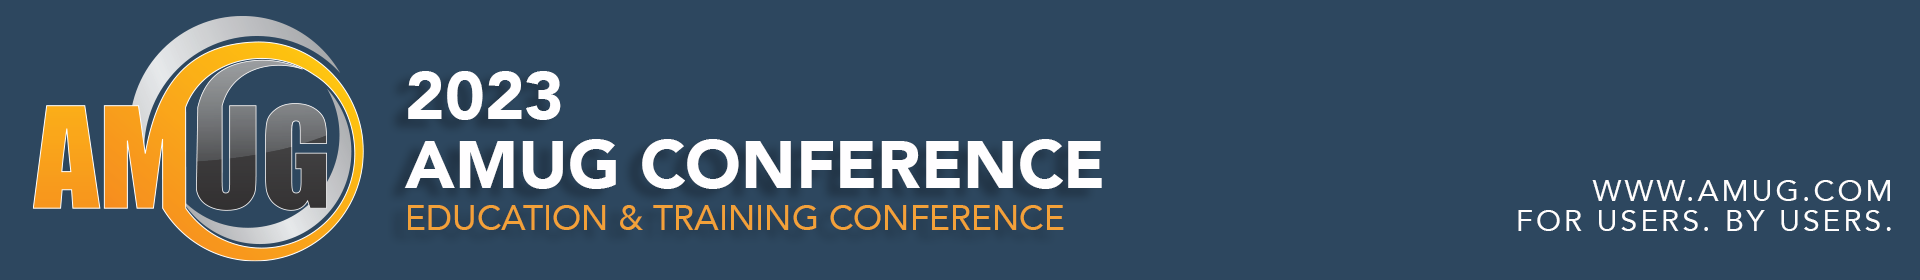 2023 AMUG Conference Event Banner